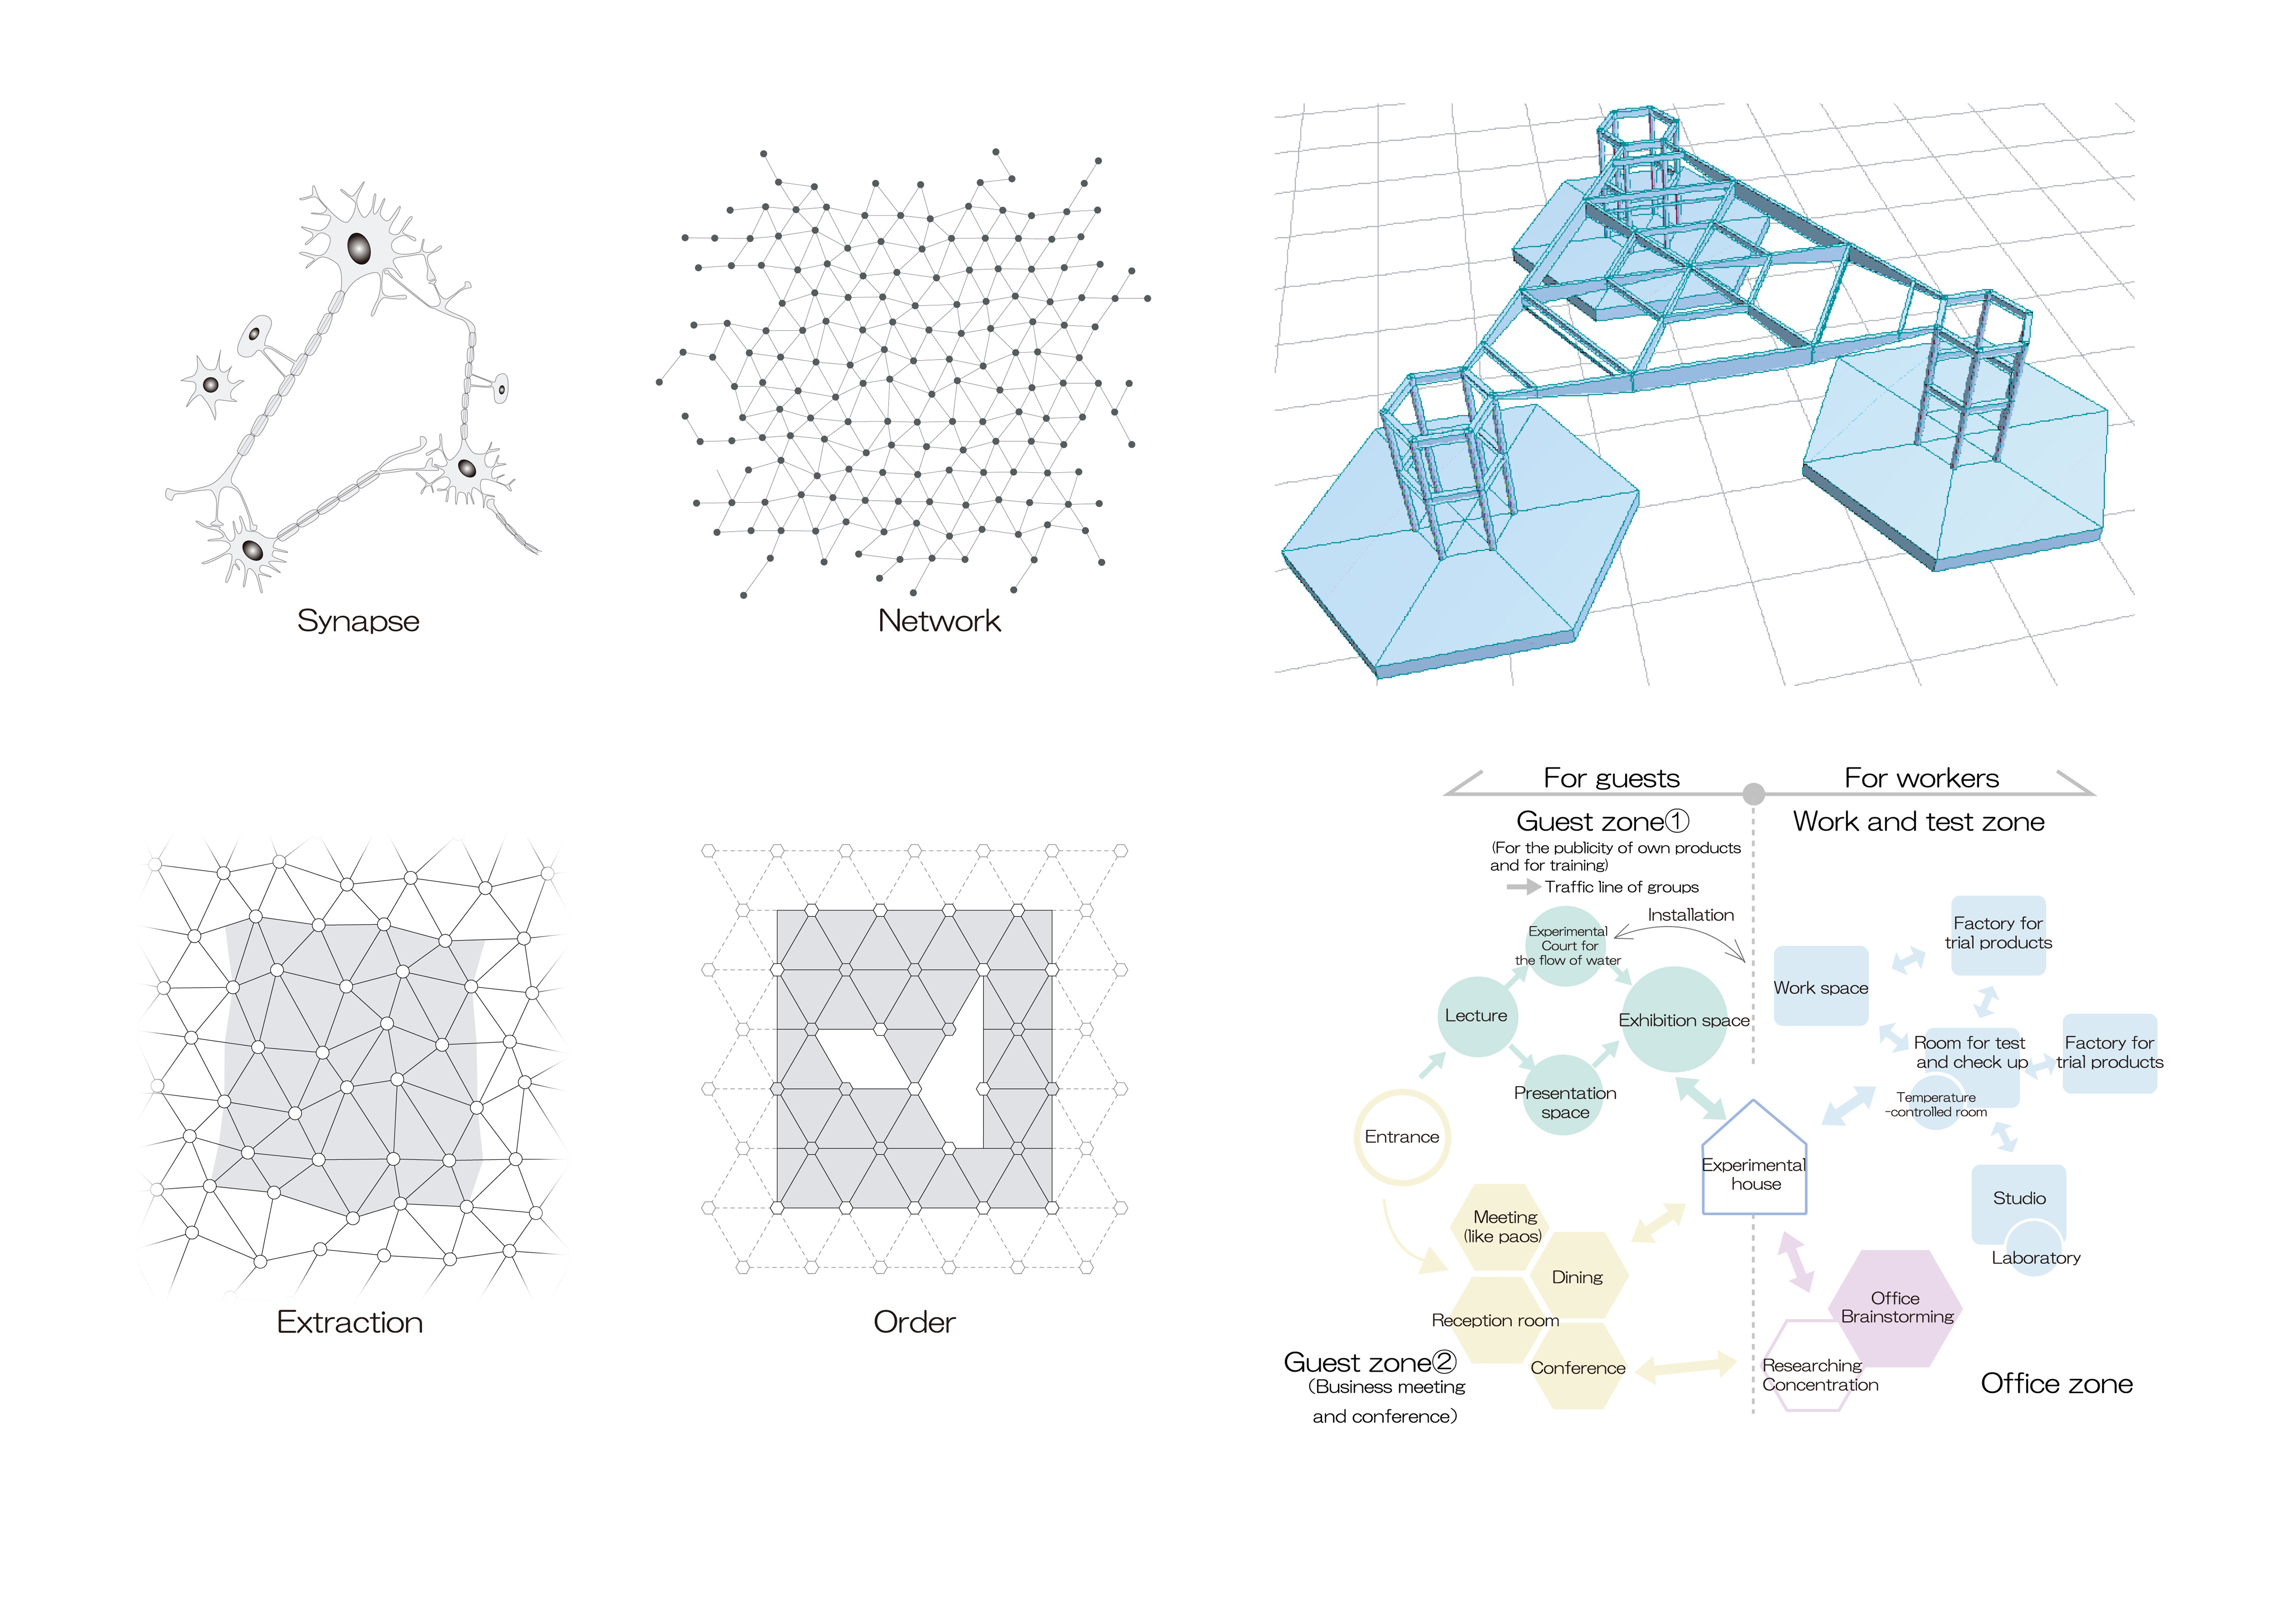 Hexagon / Aron R&D Center